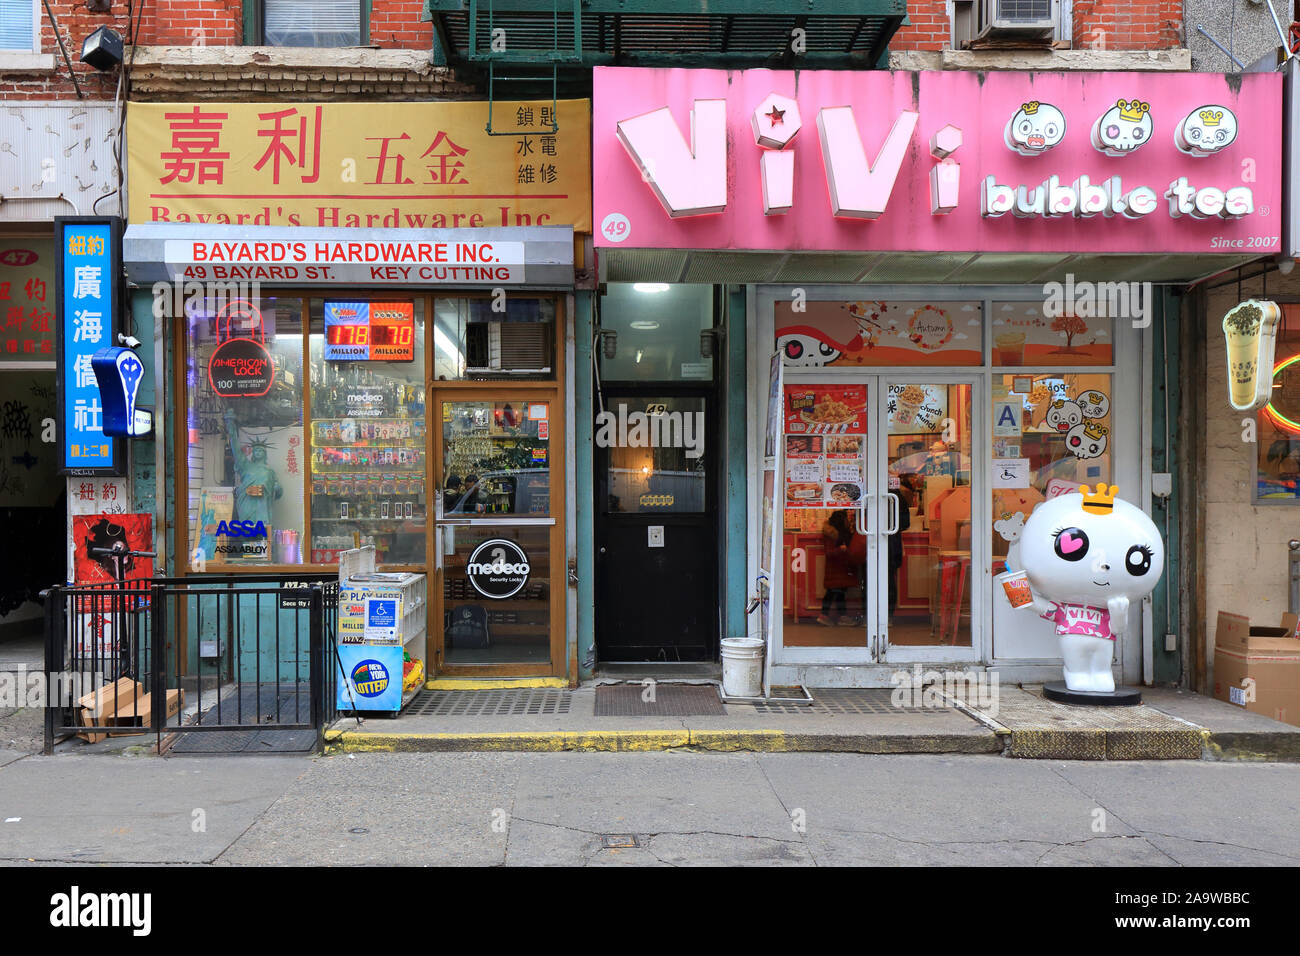 Die Bayard Hardware, Vivi Bubble Tea, 49 Bayard Street, New York, NY. Außen storefronts der lokalen Unternehmen in Manhattan Chinatown Stockfoto